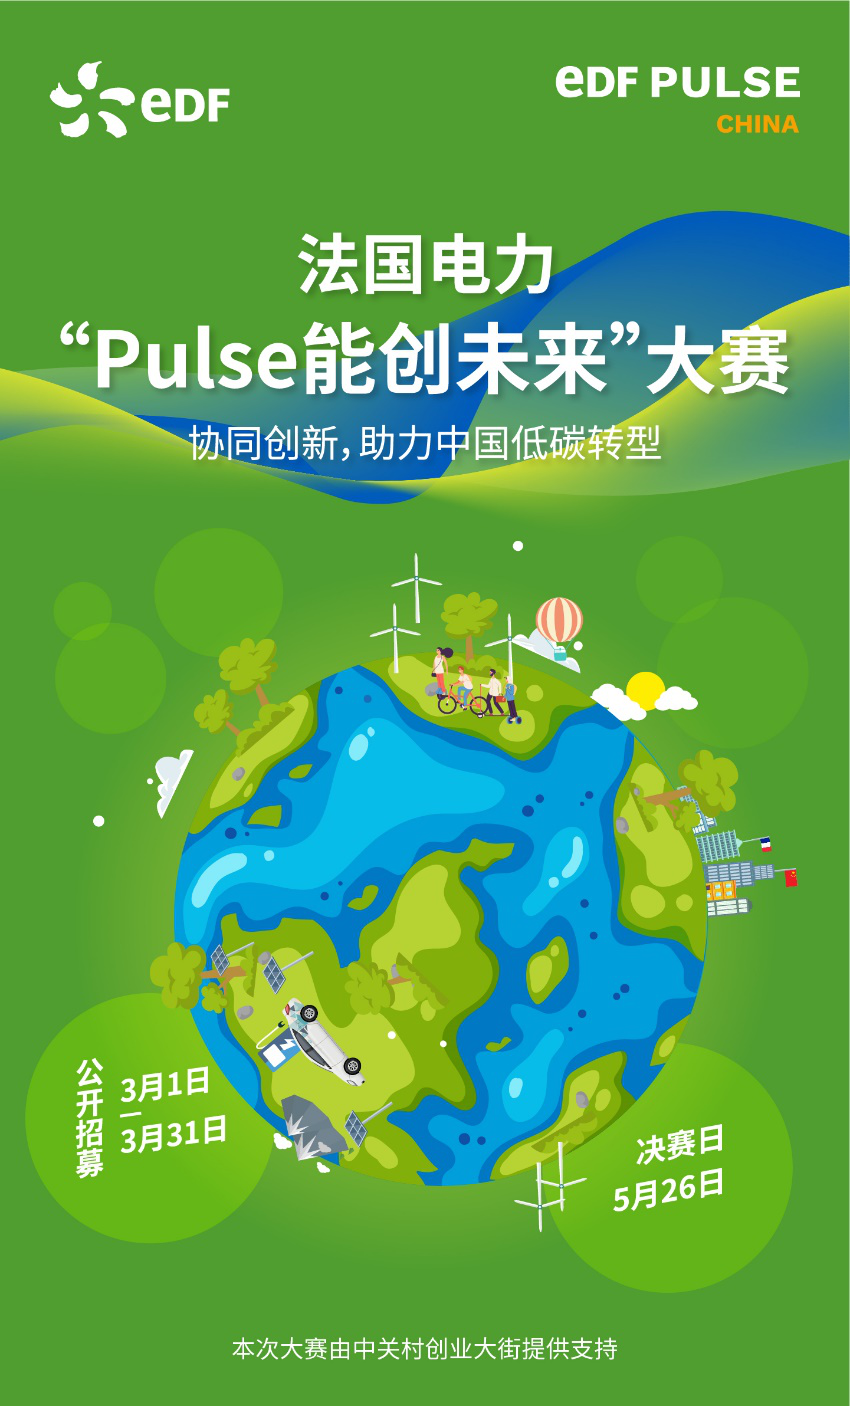 全球低碳能源的领军者法国电力集团(以下简称“法国电力”或“集团”)宣布在中国启动“Pulse能创未来”大赛